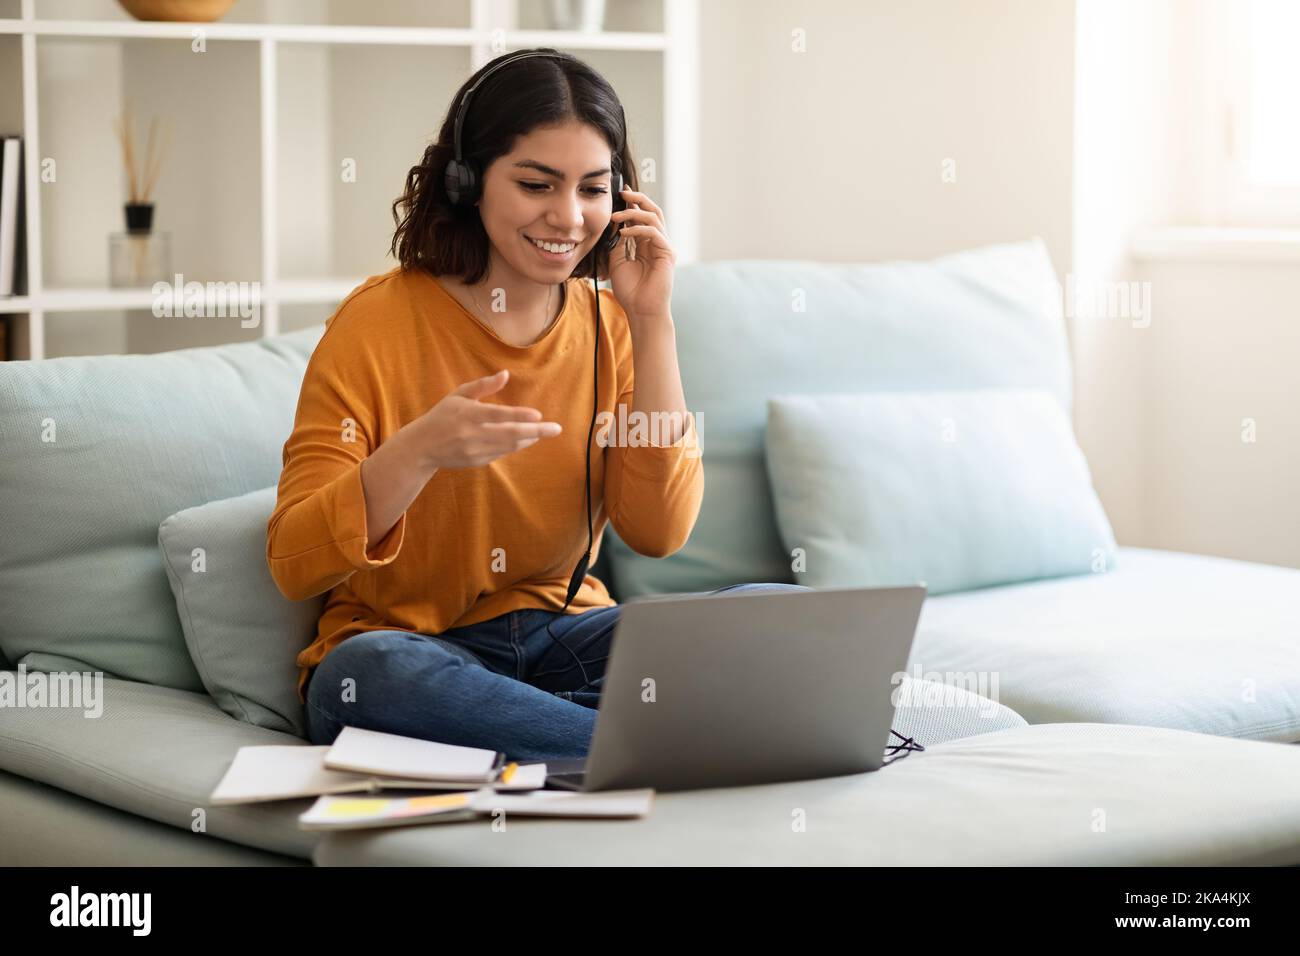 Tutorat en ligne. Femme arabe souriante dans un casque faire une téléconférence avec un ordinateur portable Banque D'Images